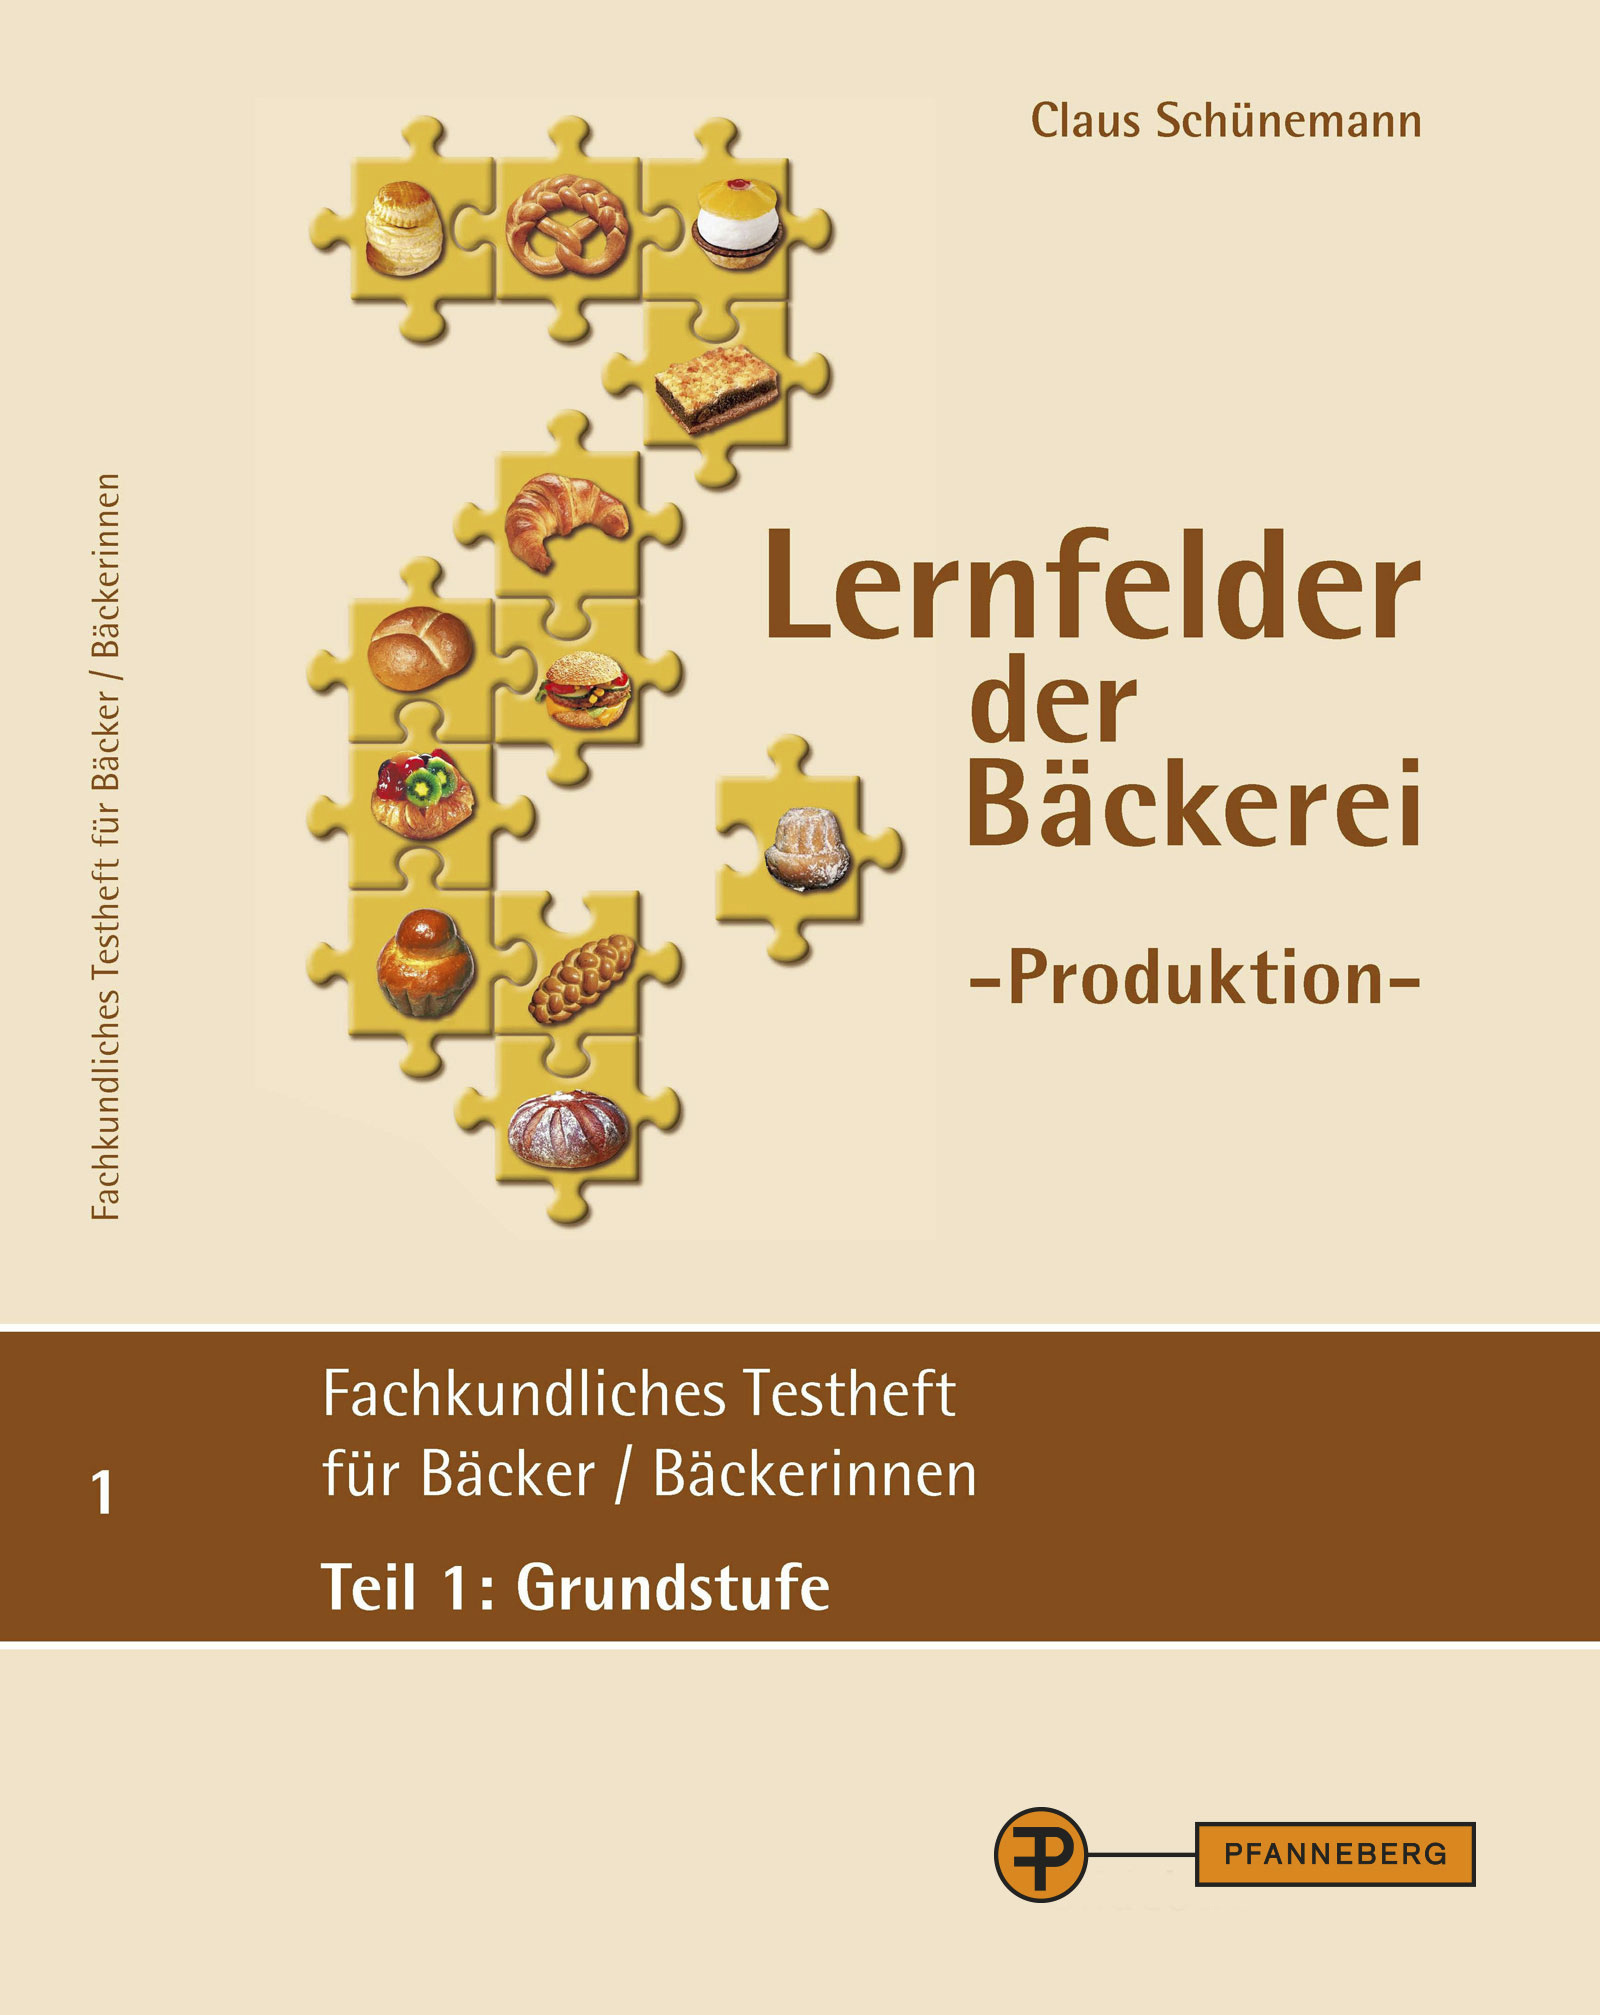 Lernfelder der Bäckerei - Produktion, Testheft 1: Grundstufe